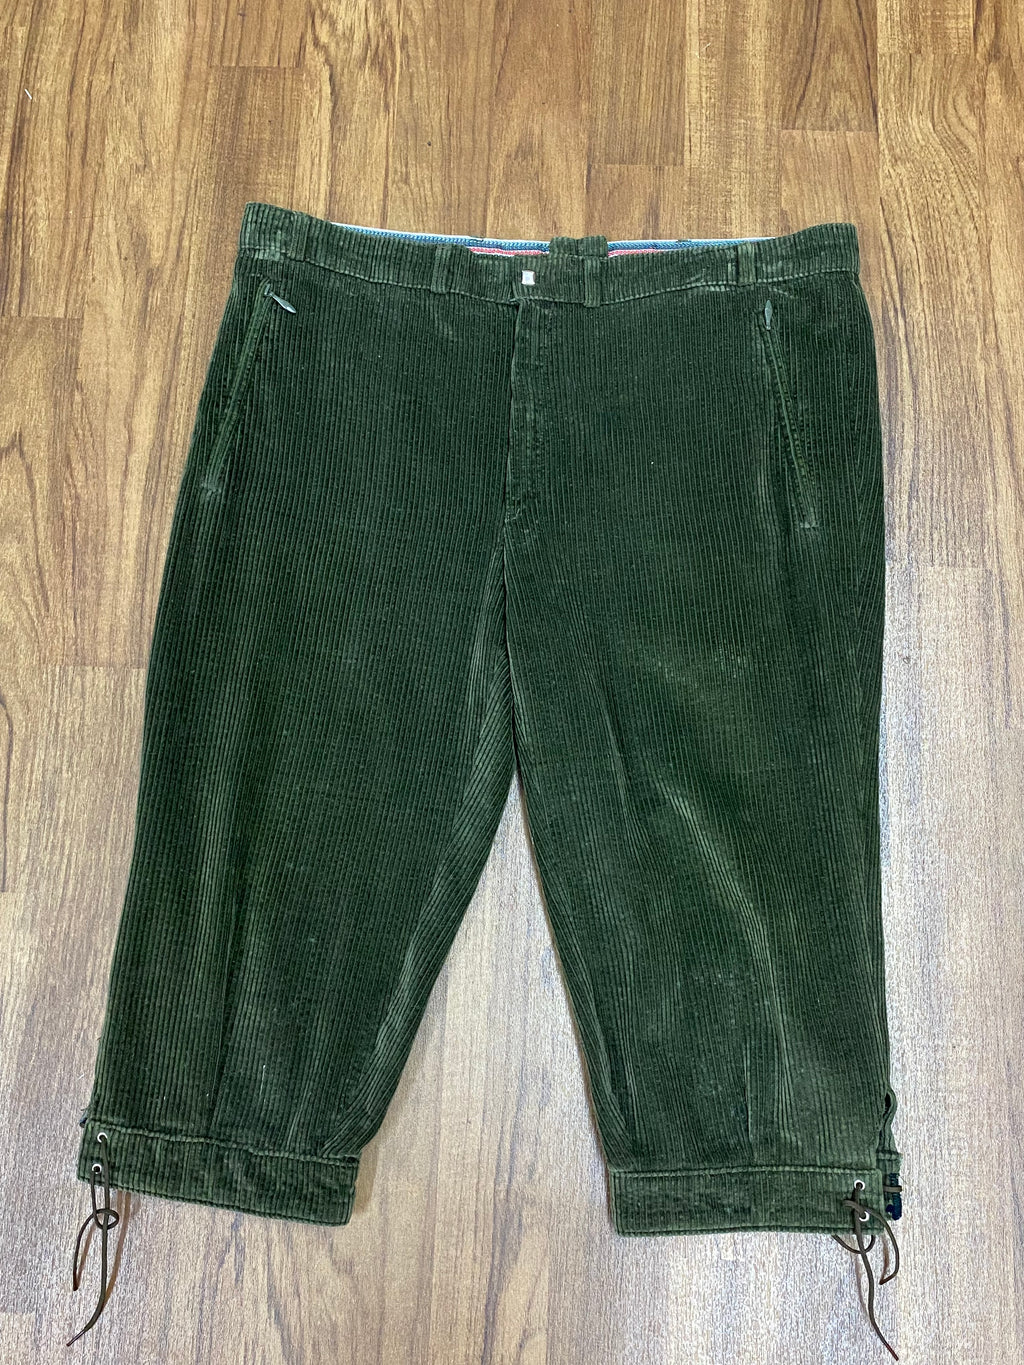 Vintage Trachtenhose, Kniebund Cordhose Bundweite grün 